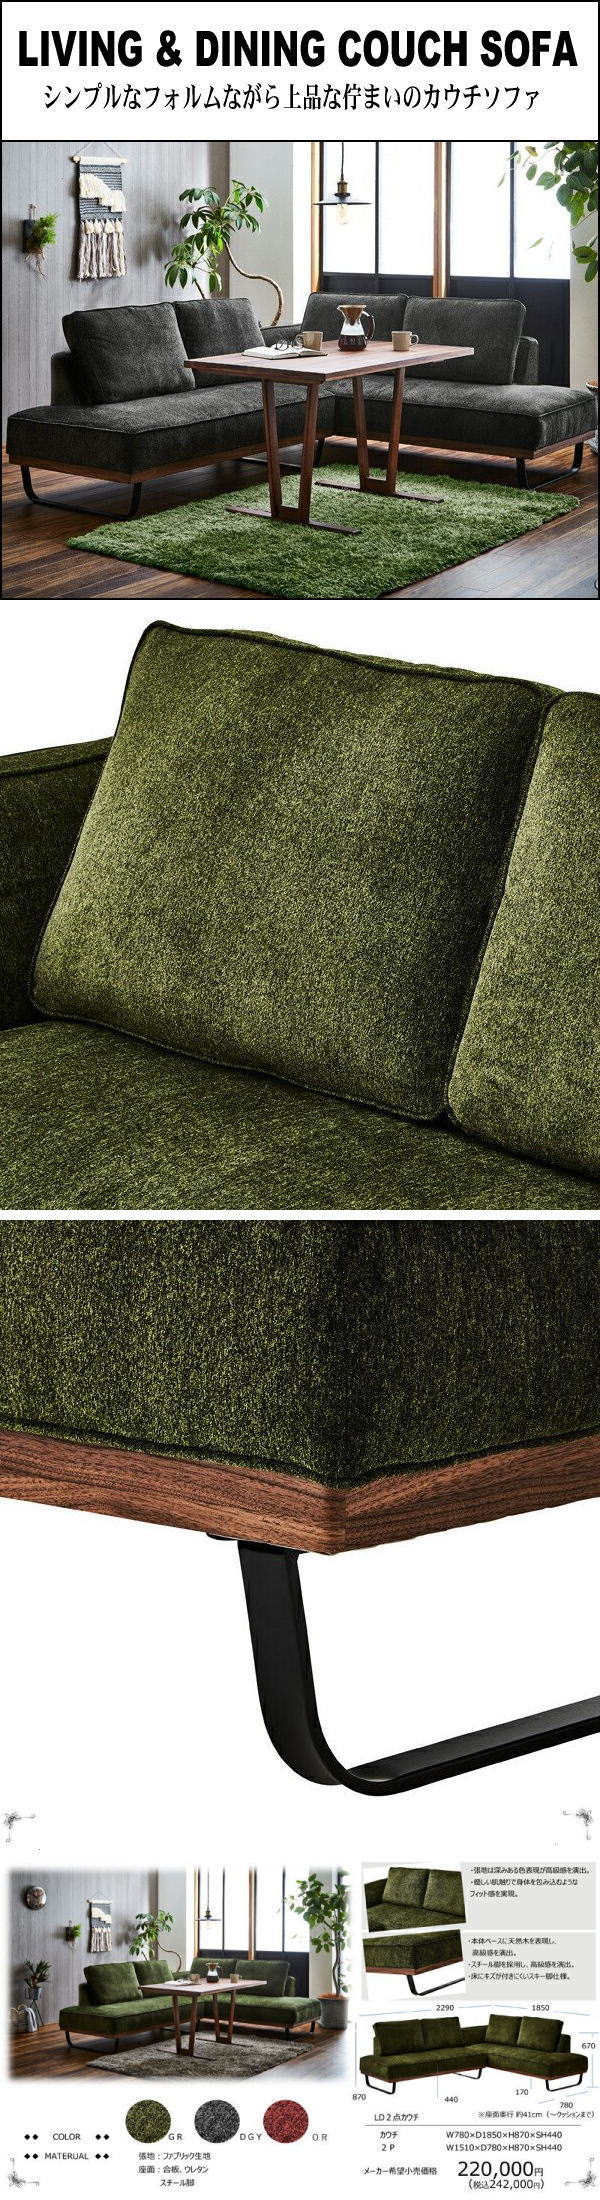 【純正新品】55GY1 北欧スタイル大型カウチソファセット■布製コーナーソファ寝椅子(検 展示品アウトレット展示処分品 布製